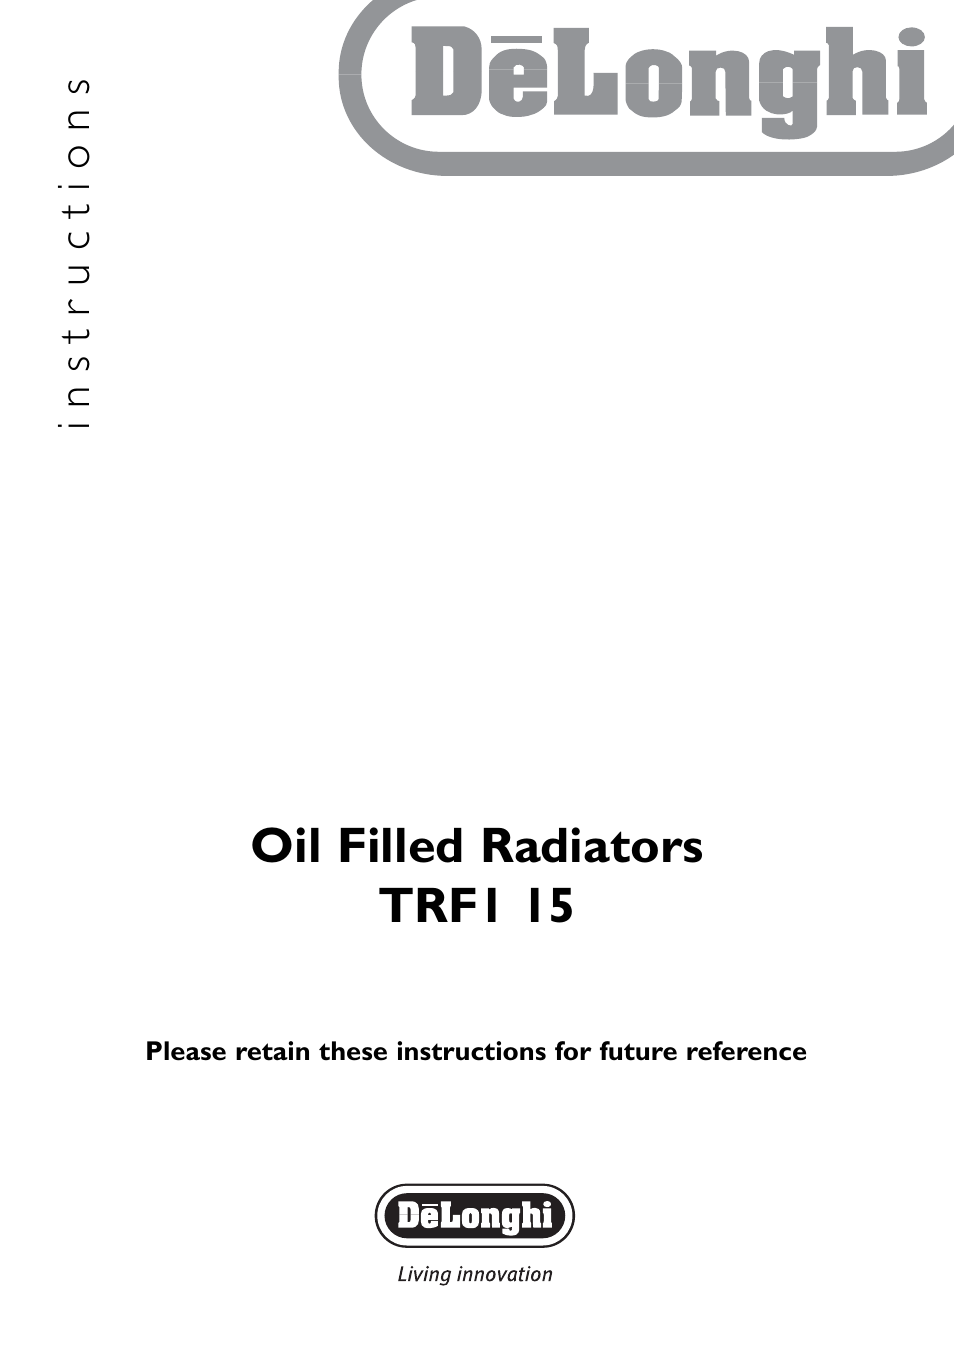 TRF1 15